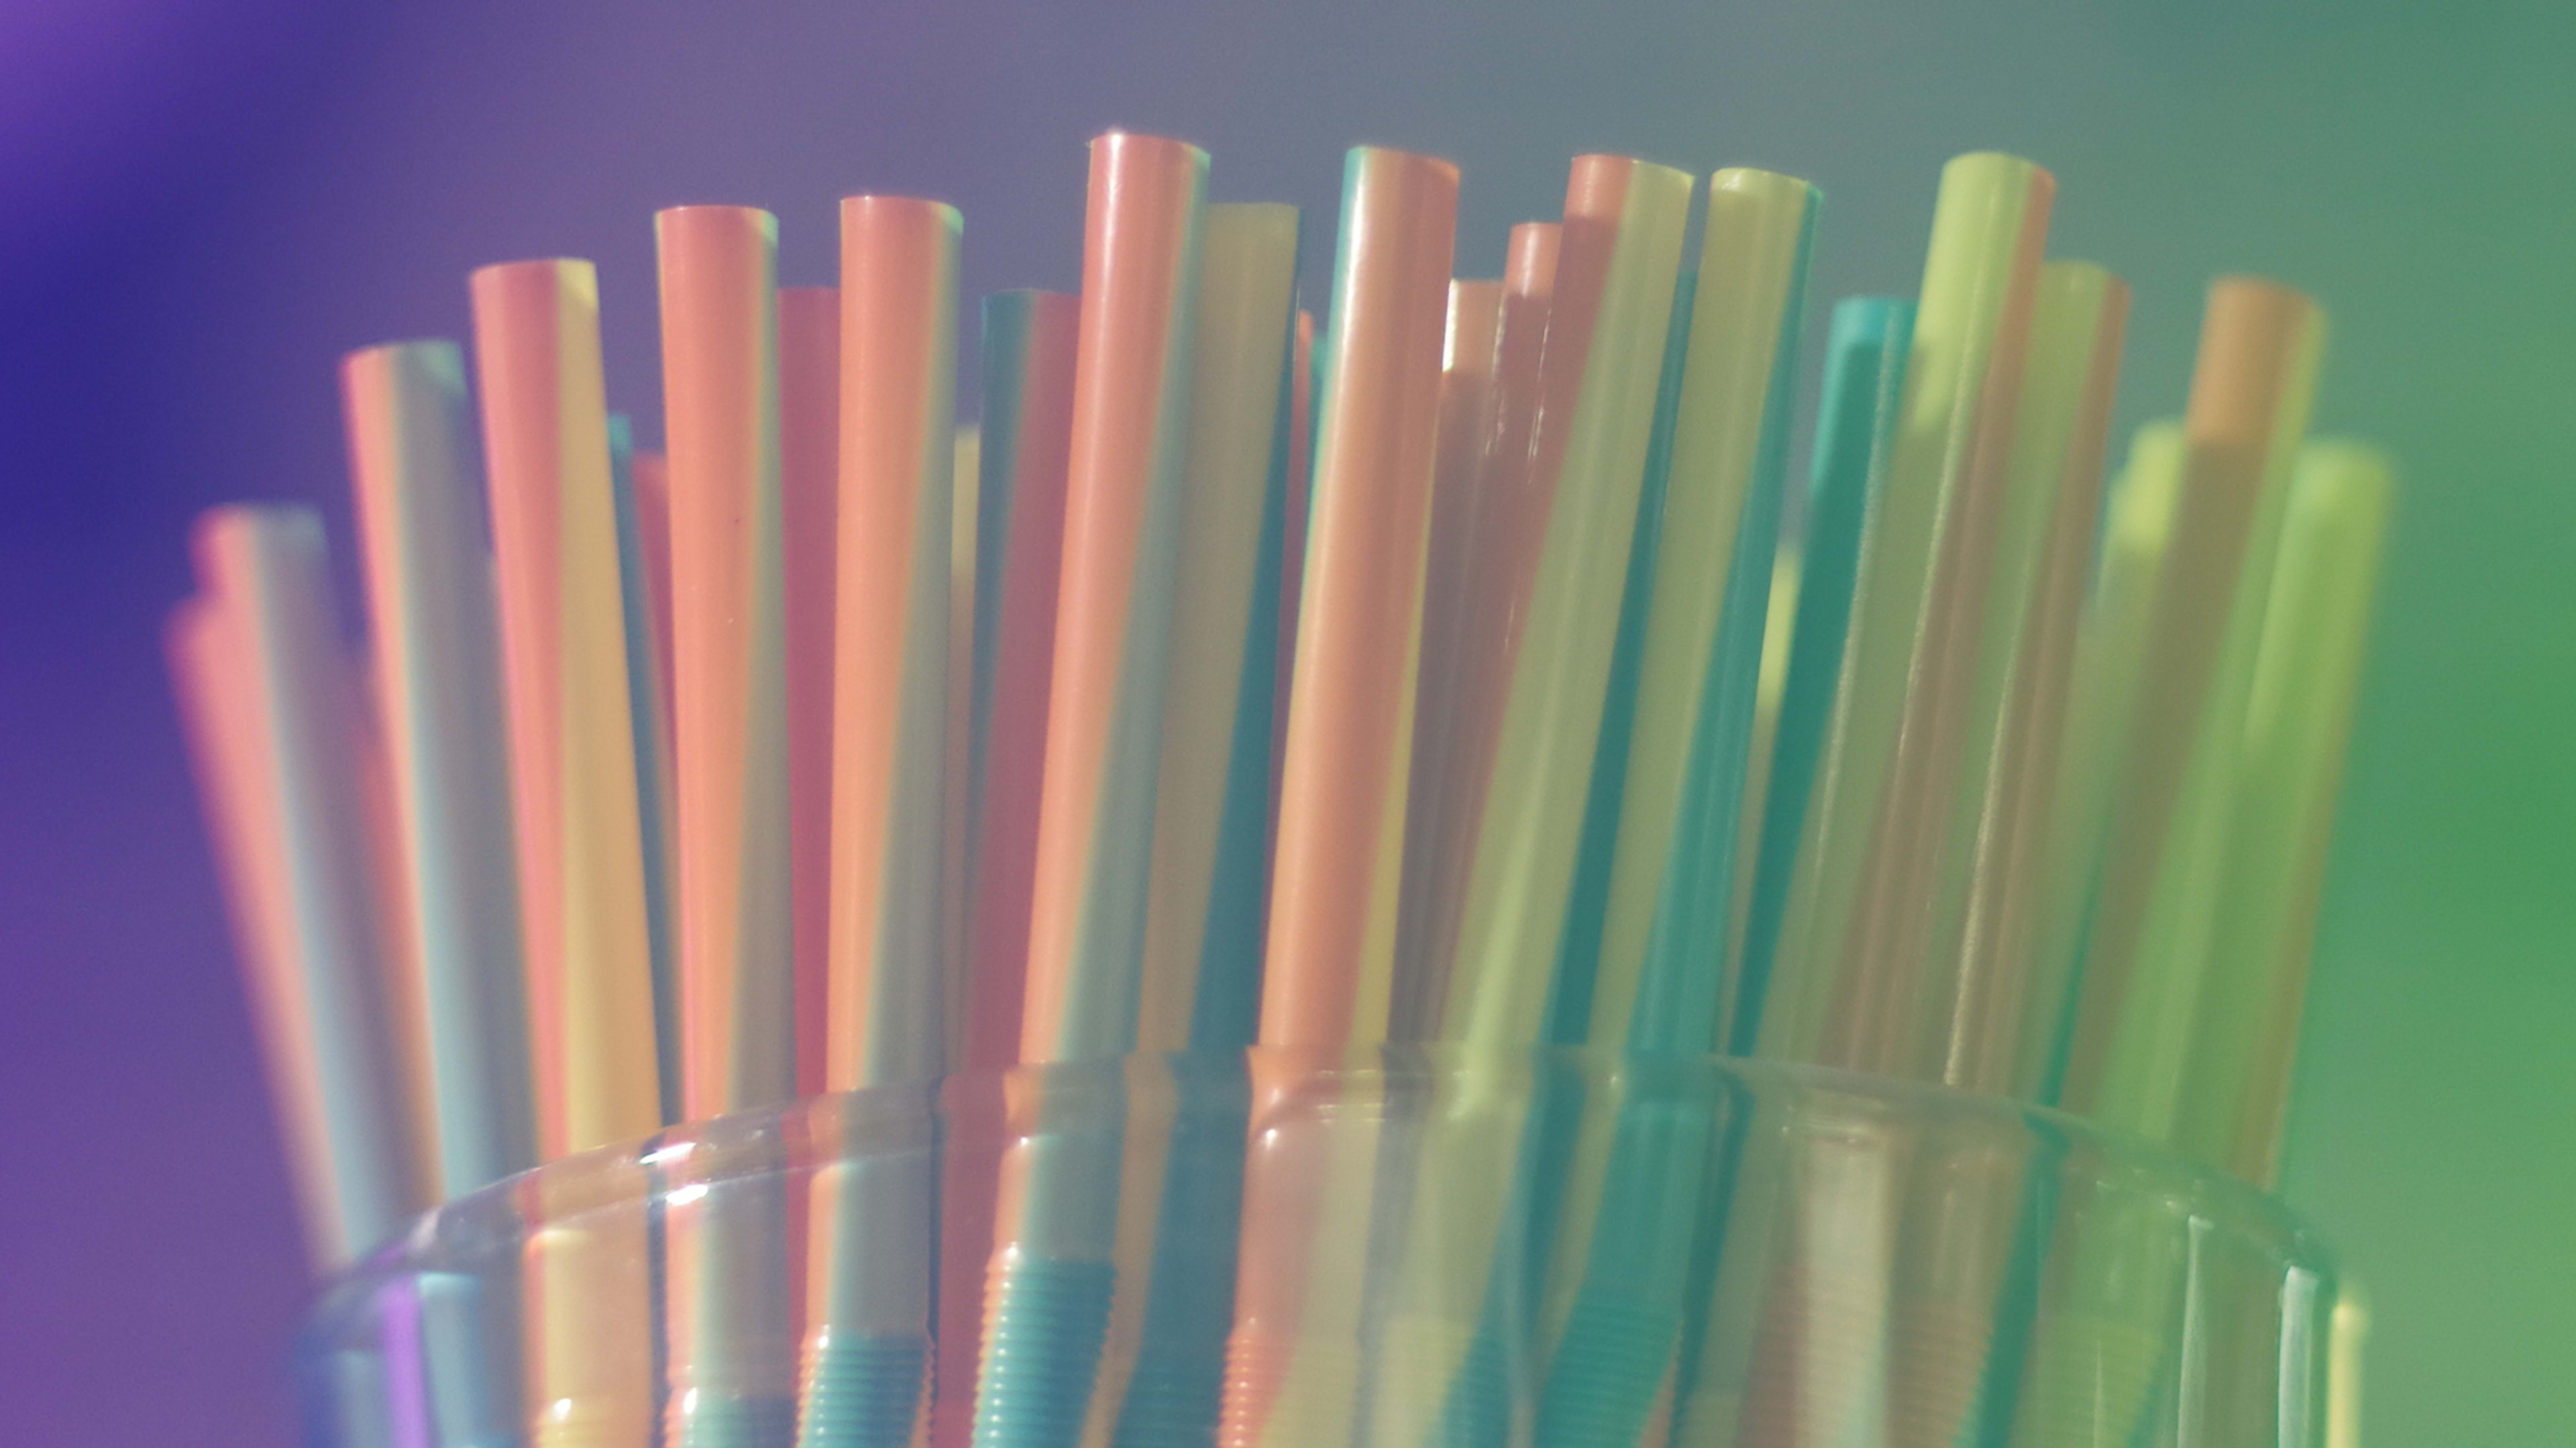 McDonald’s will test plastic straw alternatives in the U.S.